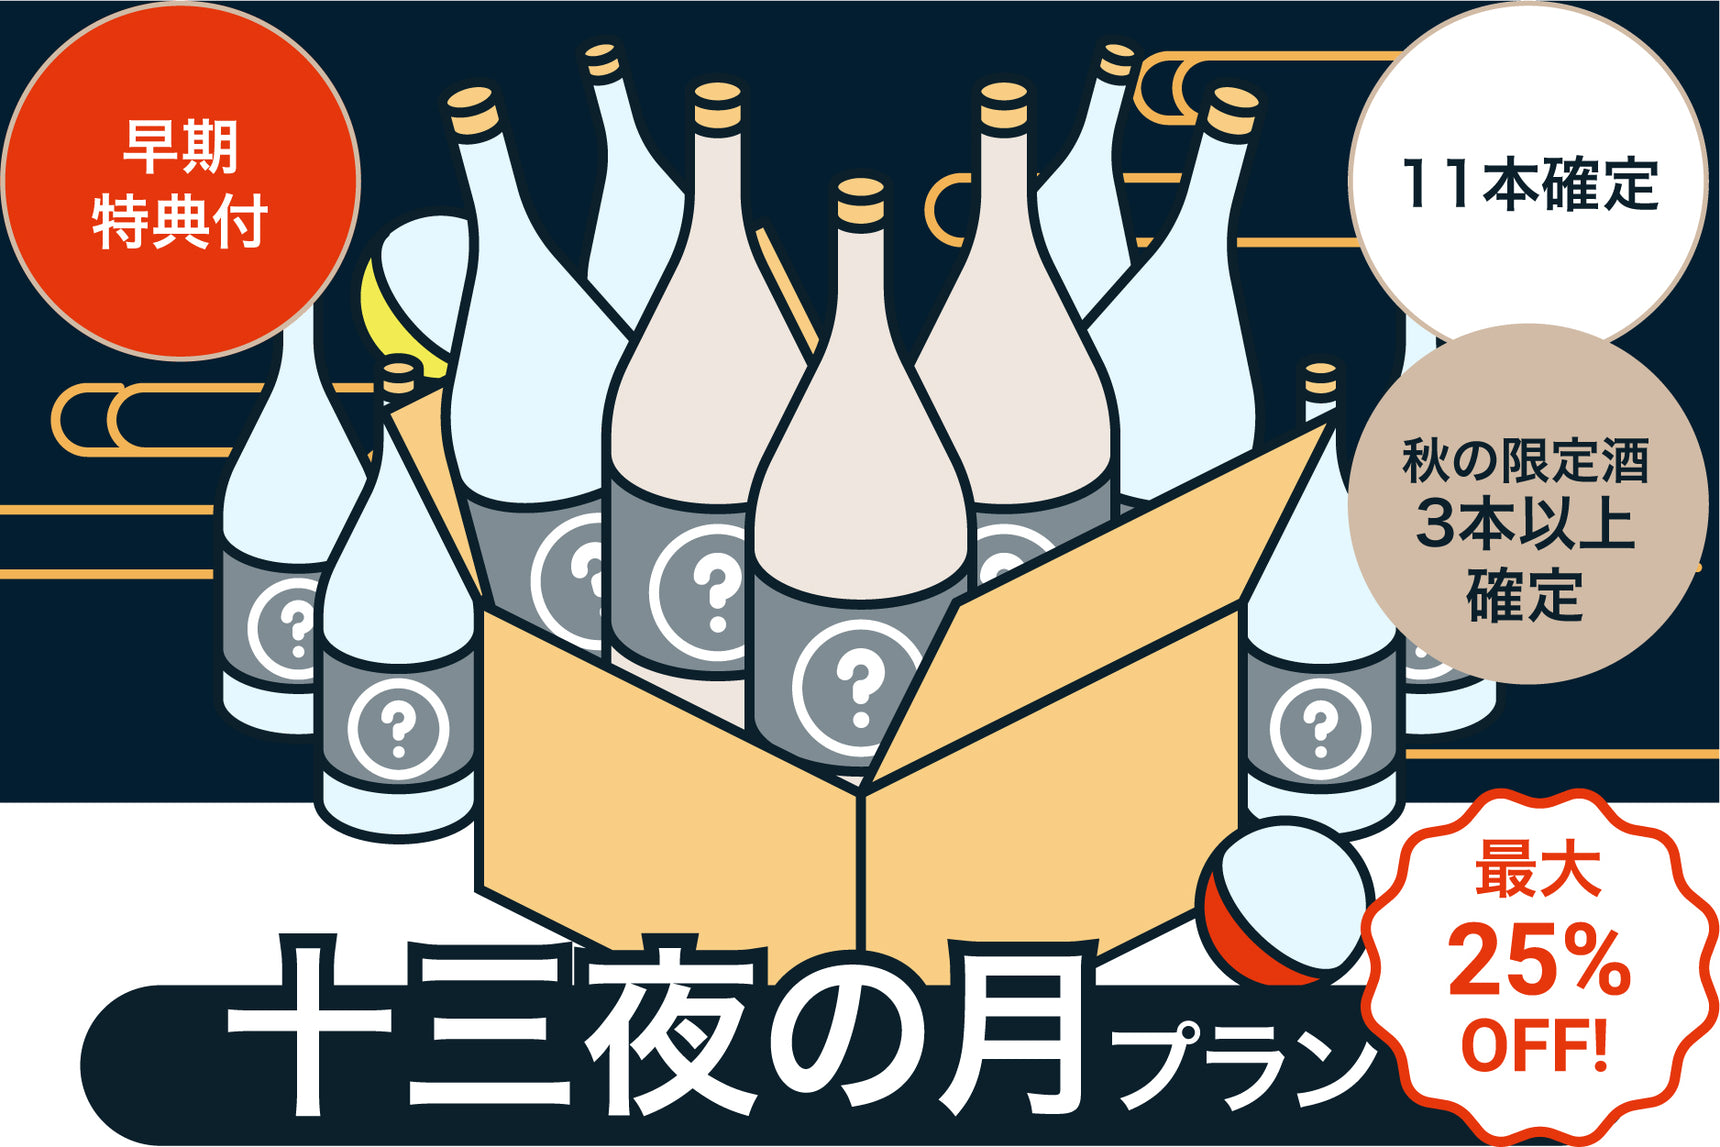 【早期特典付き】 最大25%OFF！酒ガチャ収穫祭【十三夜の月】プラン